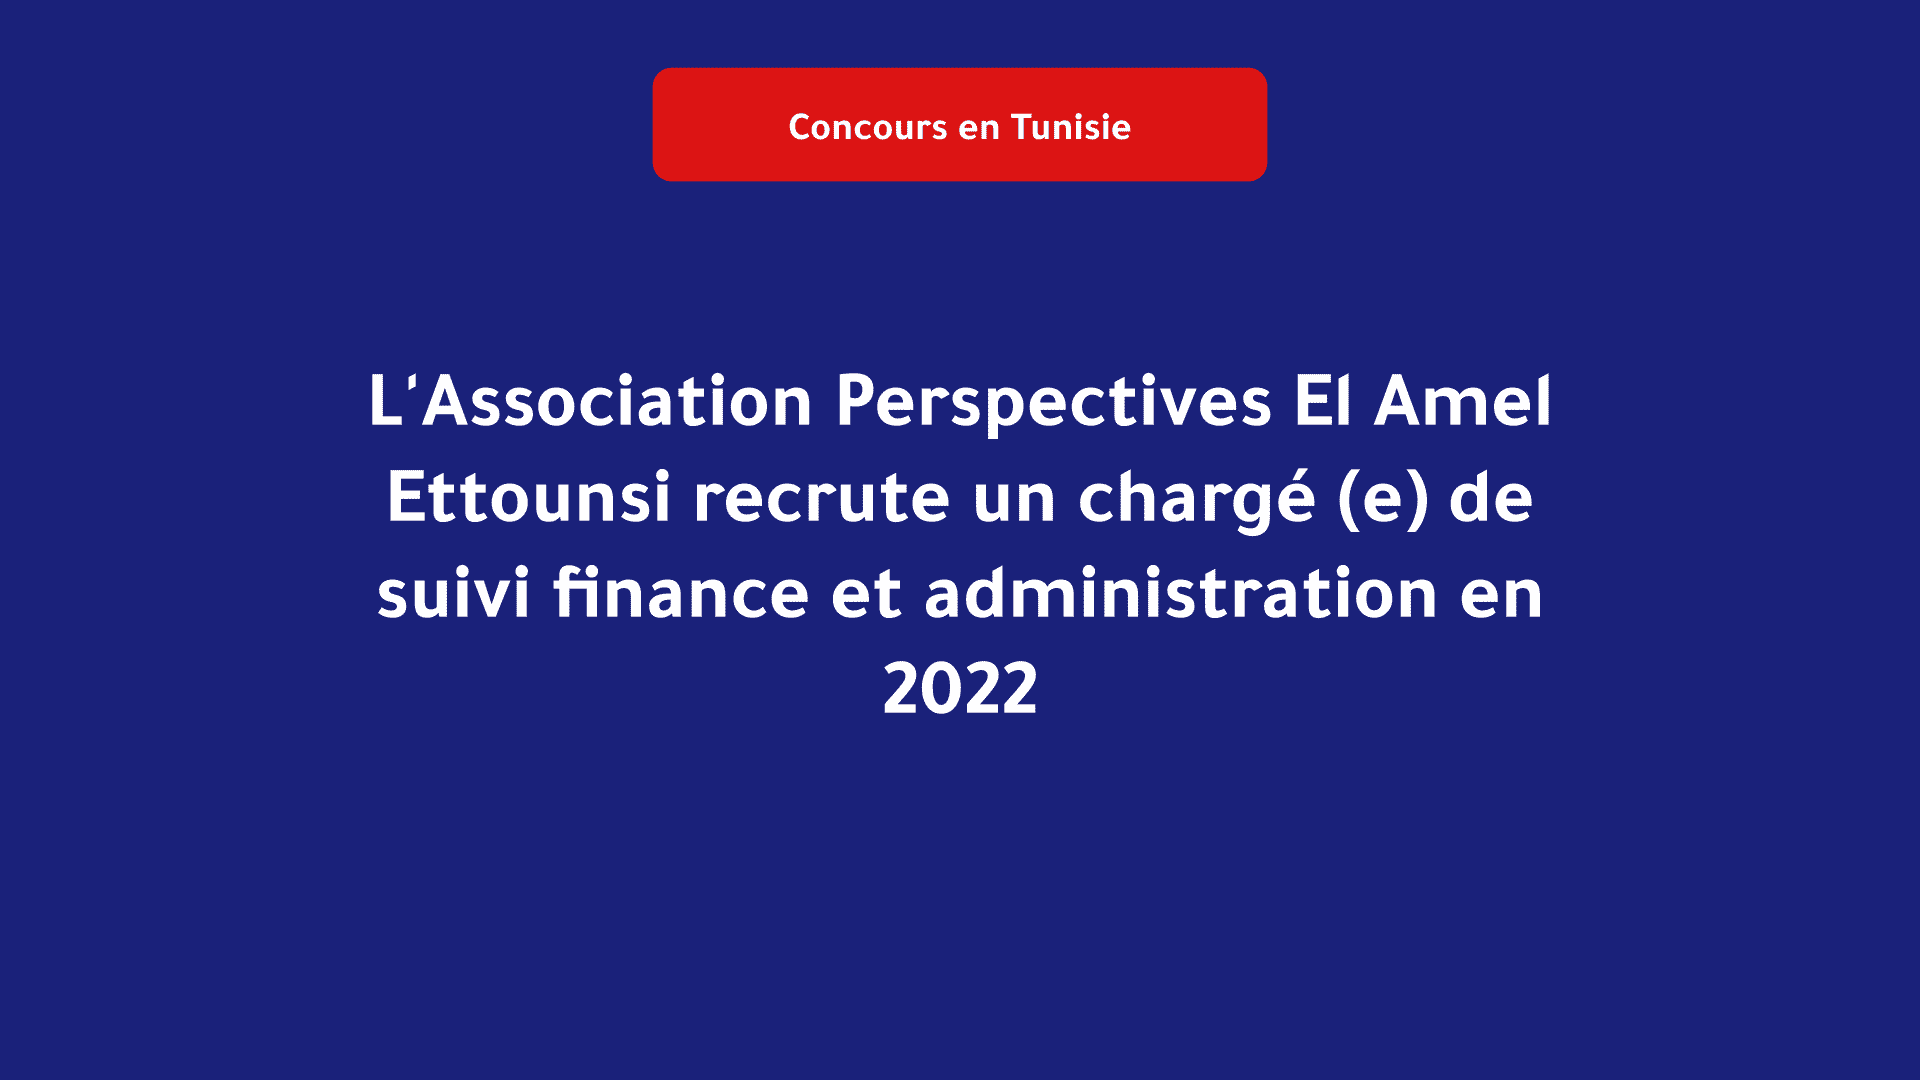 L'Association Perspectives El Amel Ettounsi recrute un chargé (e)